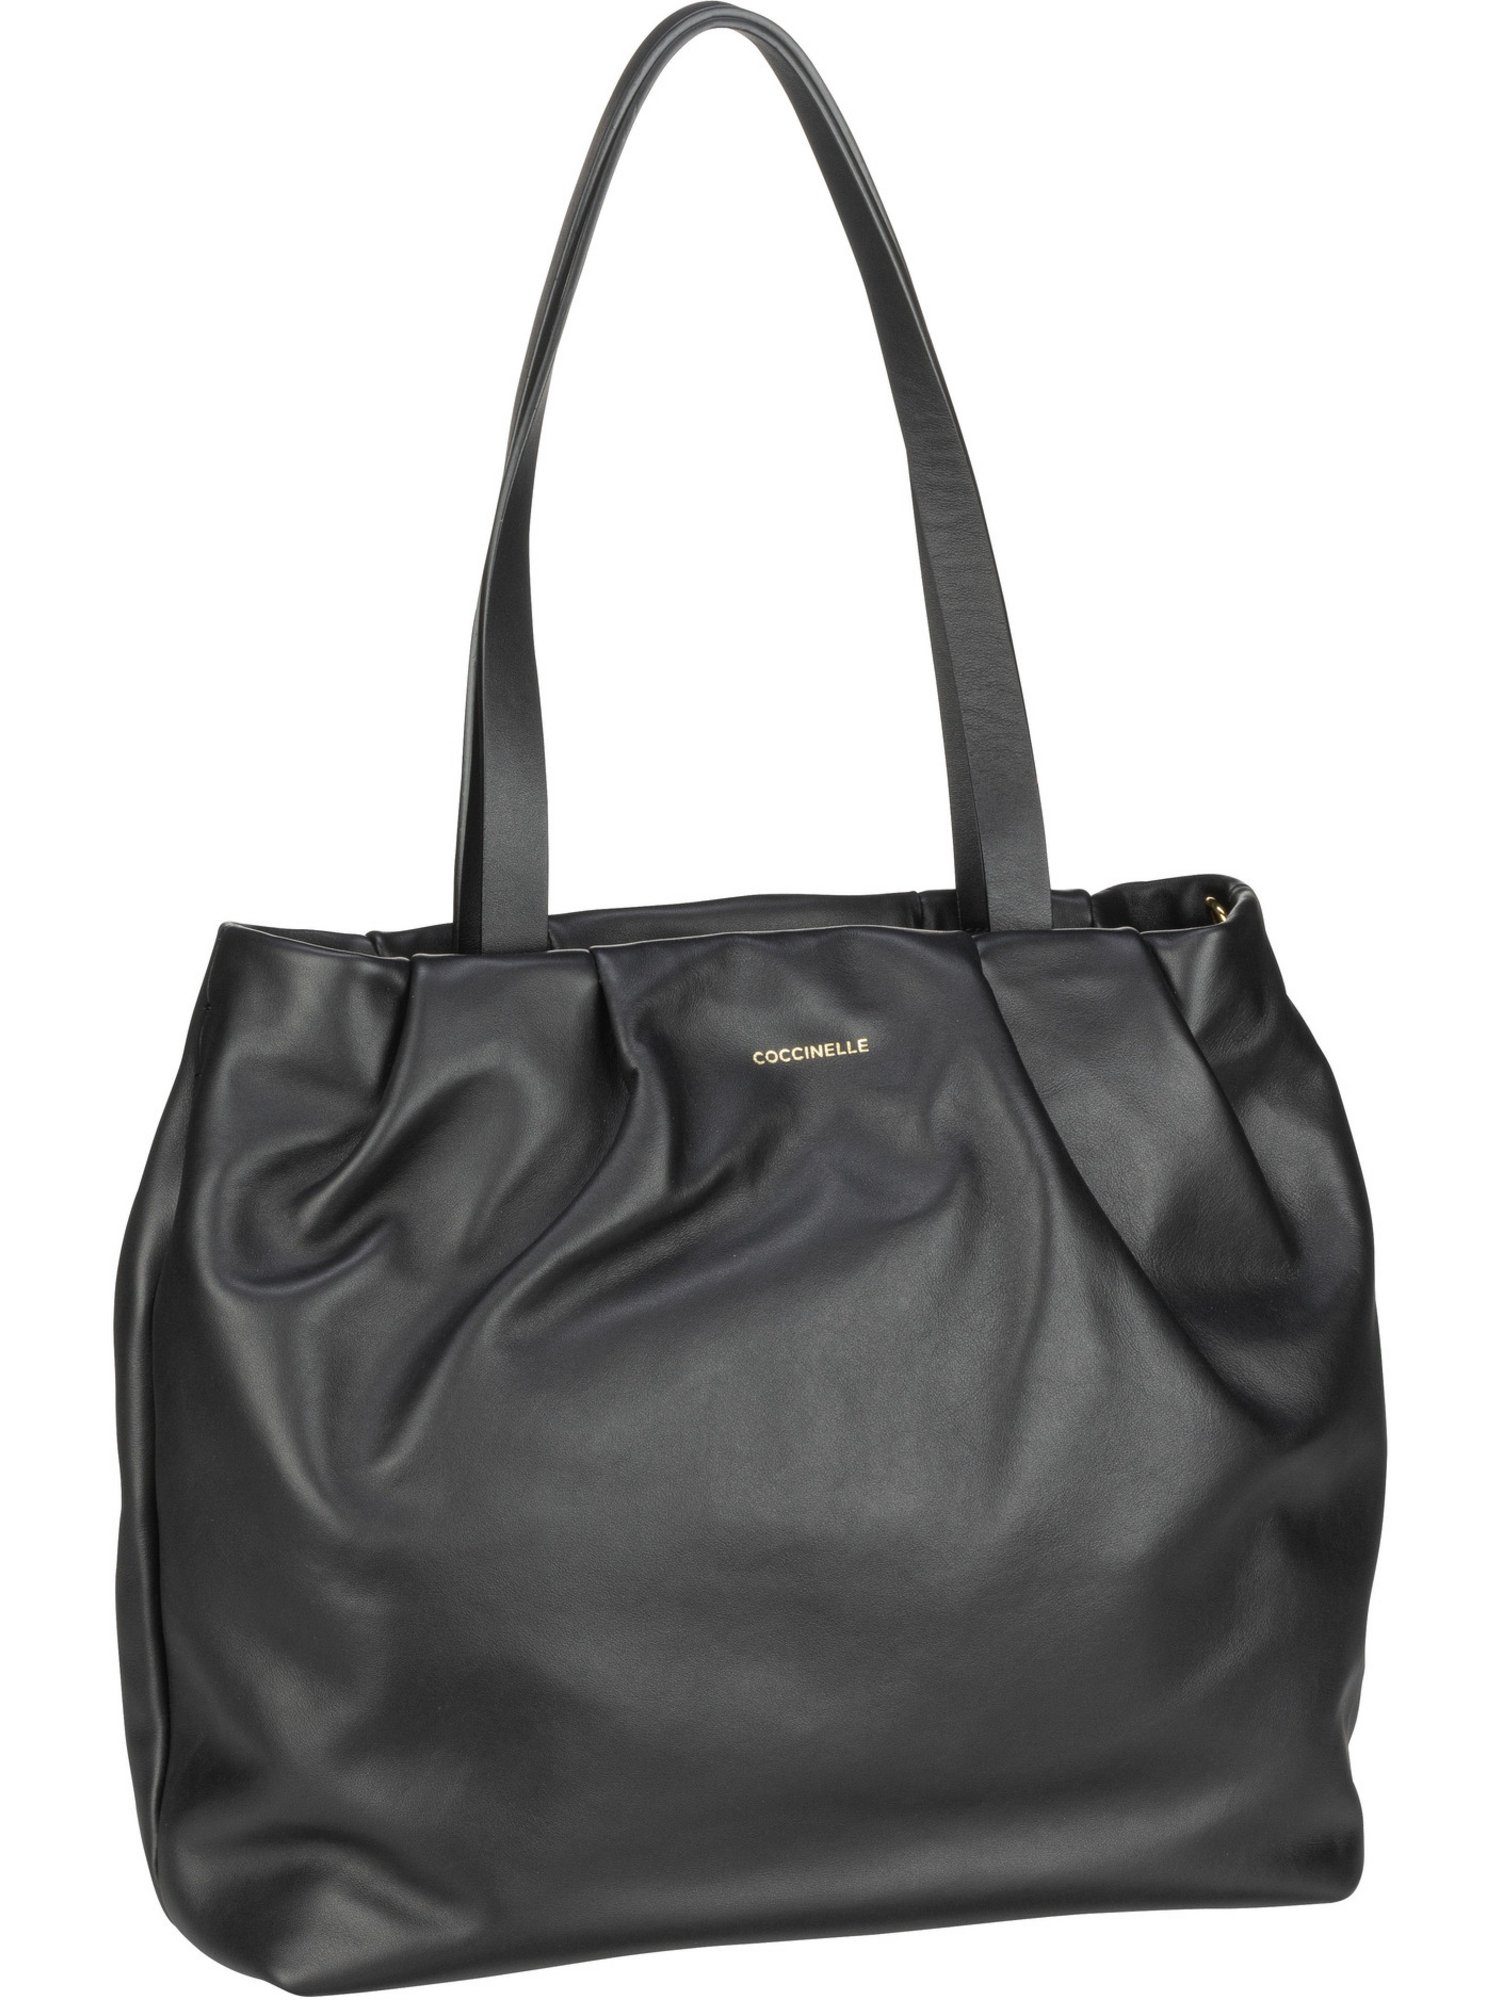 COCCINELLE Handtasche »Ophelie De Jour 1101«, Shopper online kaufen | OTTO